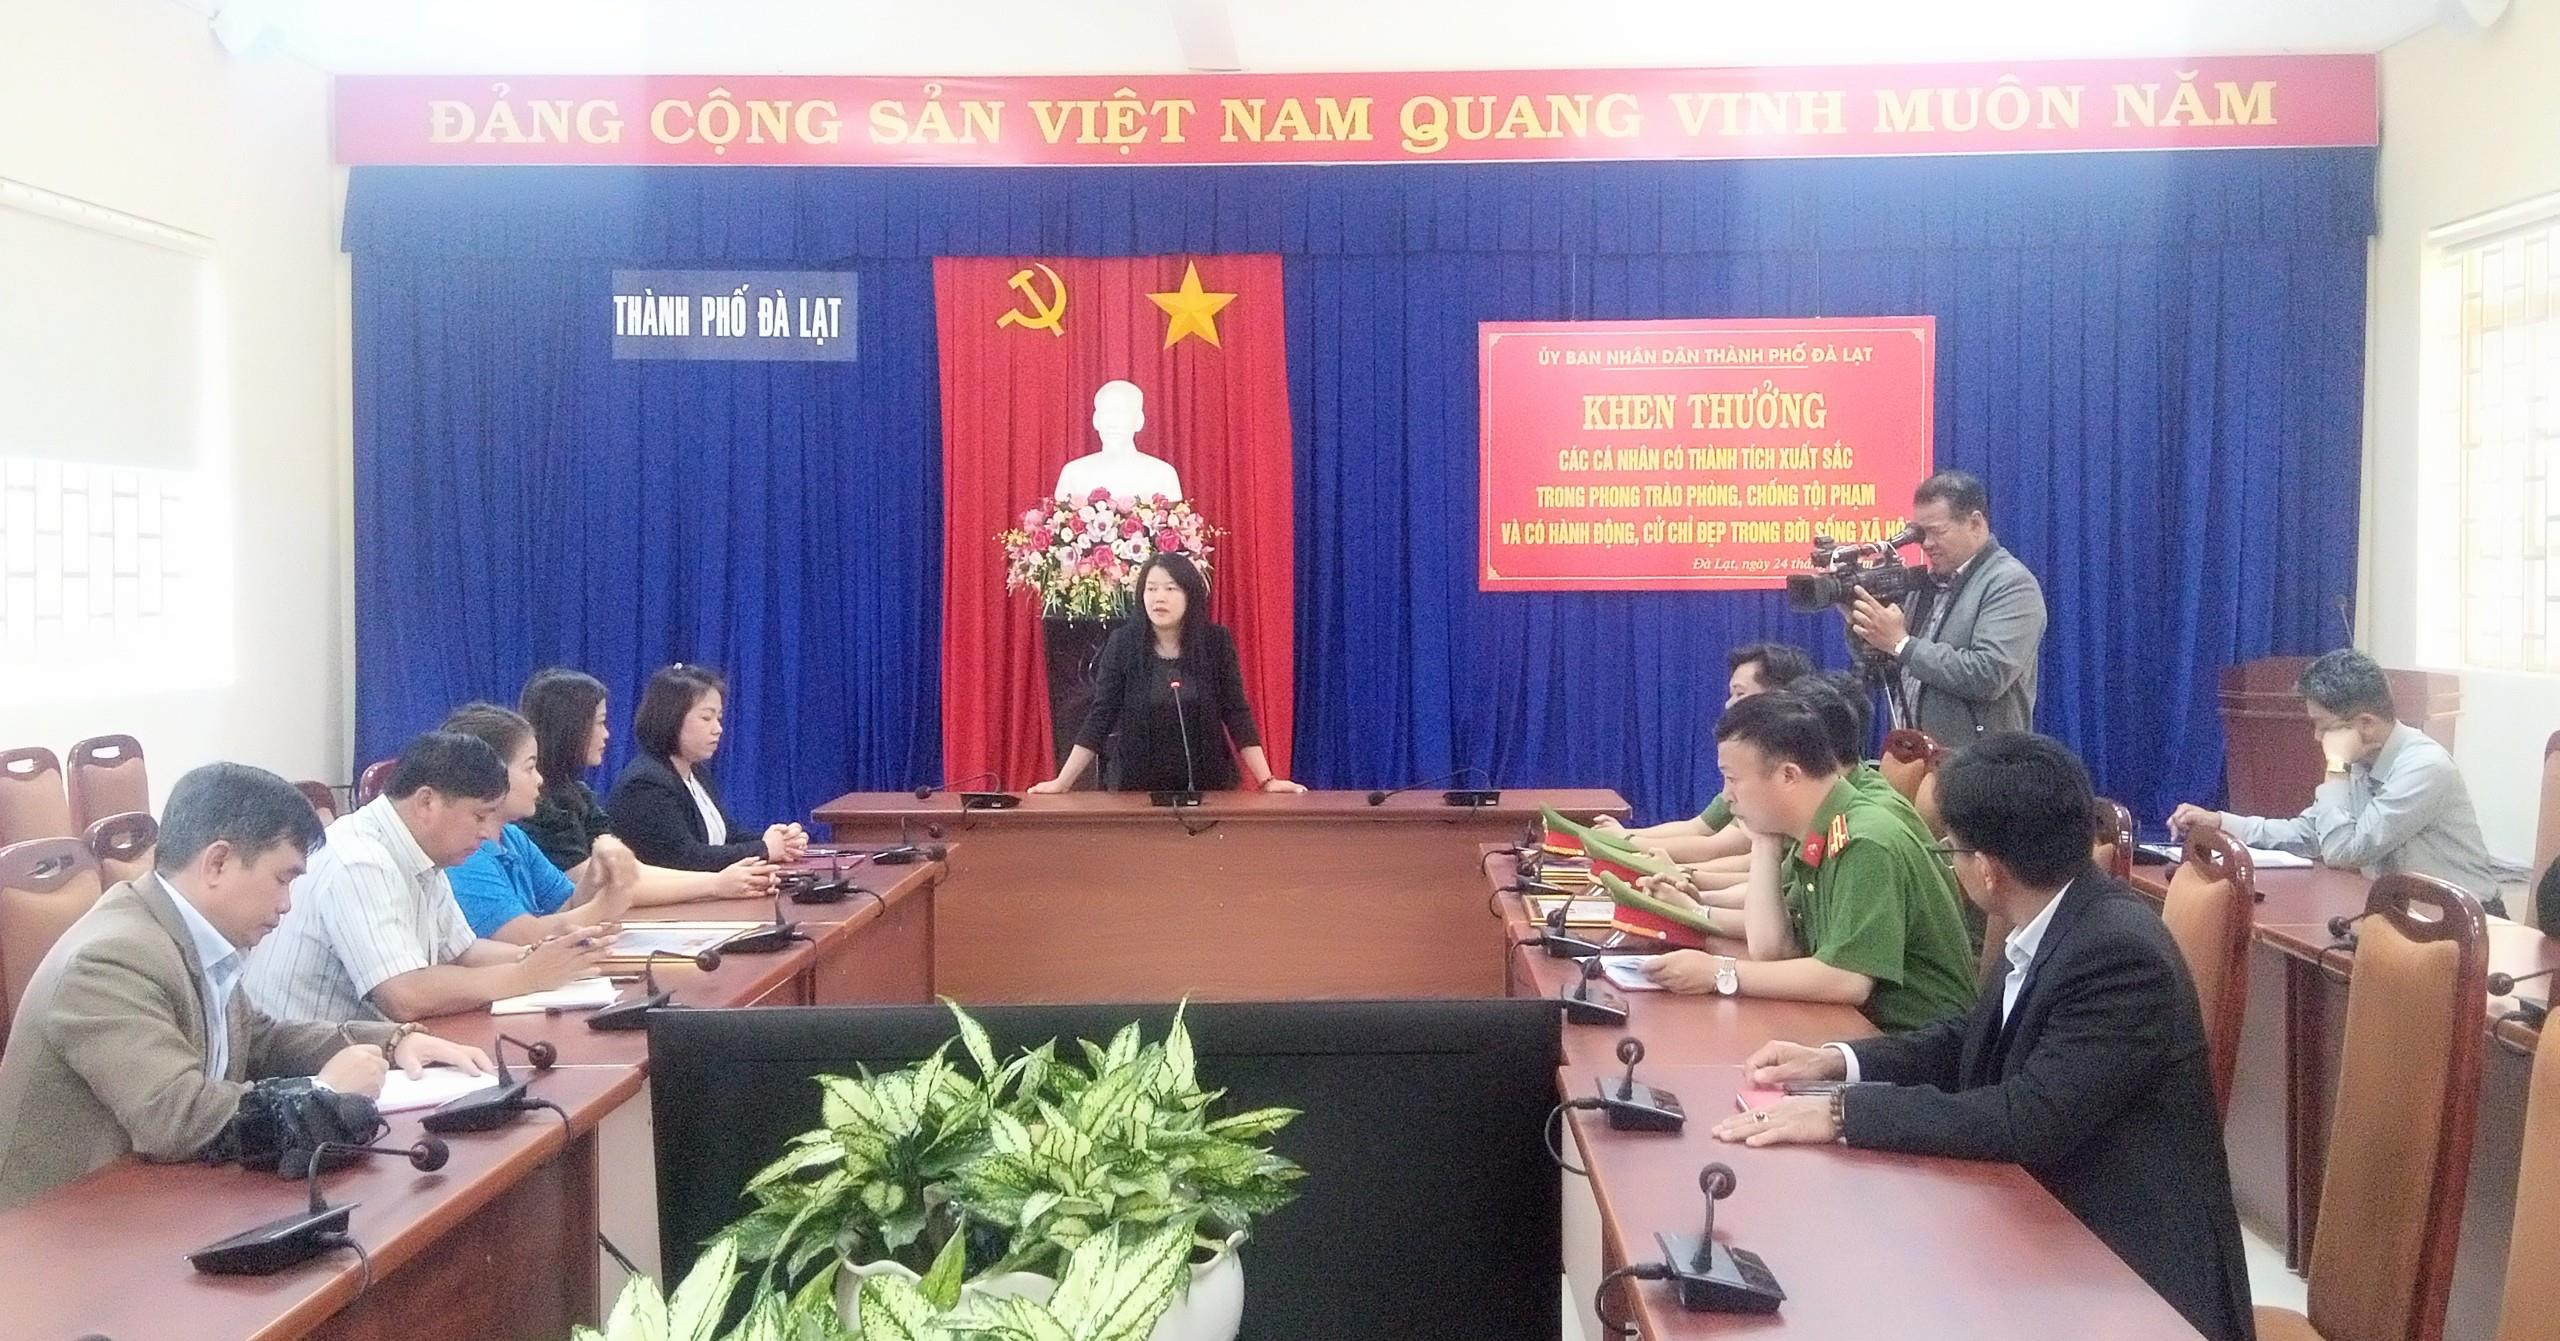 Bà Trần Thị Vũ Loan- Phó Chủ tịch UBND TP Đà Lạt biểu dương các cá nhân có thành tích xuất sắc trong phong trào phòng, chống tội phạm và có hành động, cử chỉ đẹp trong đời sống xã hội